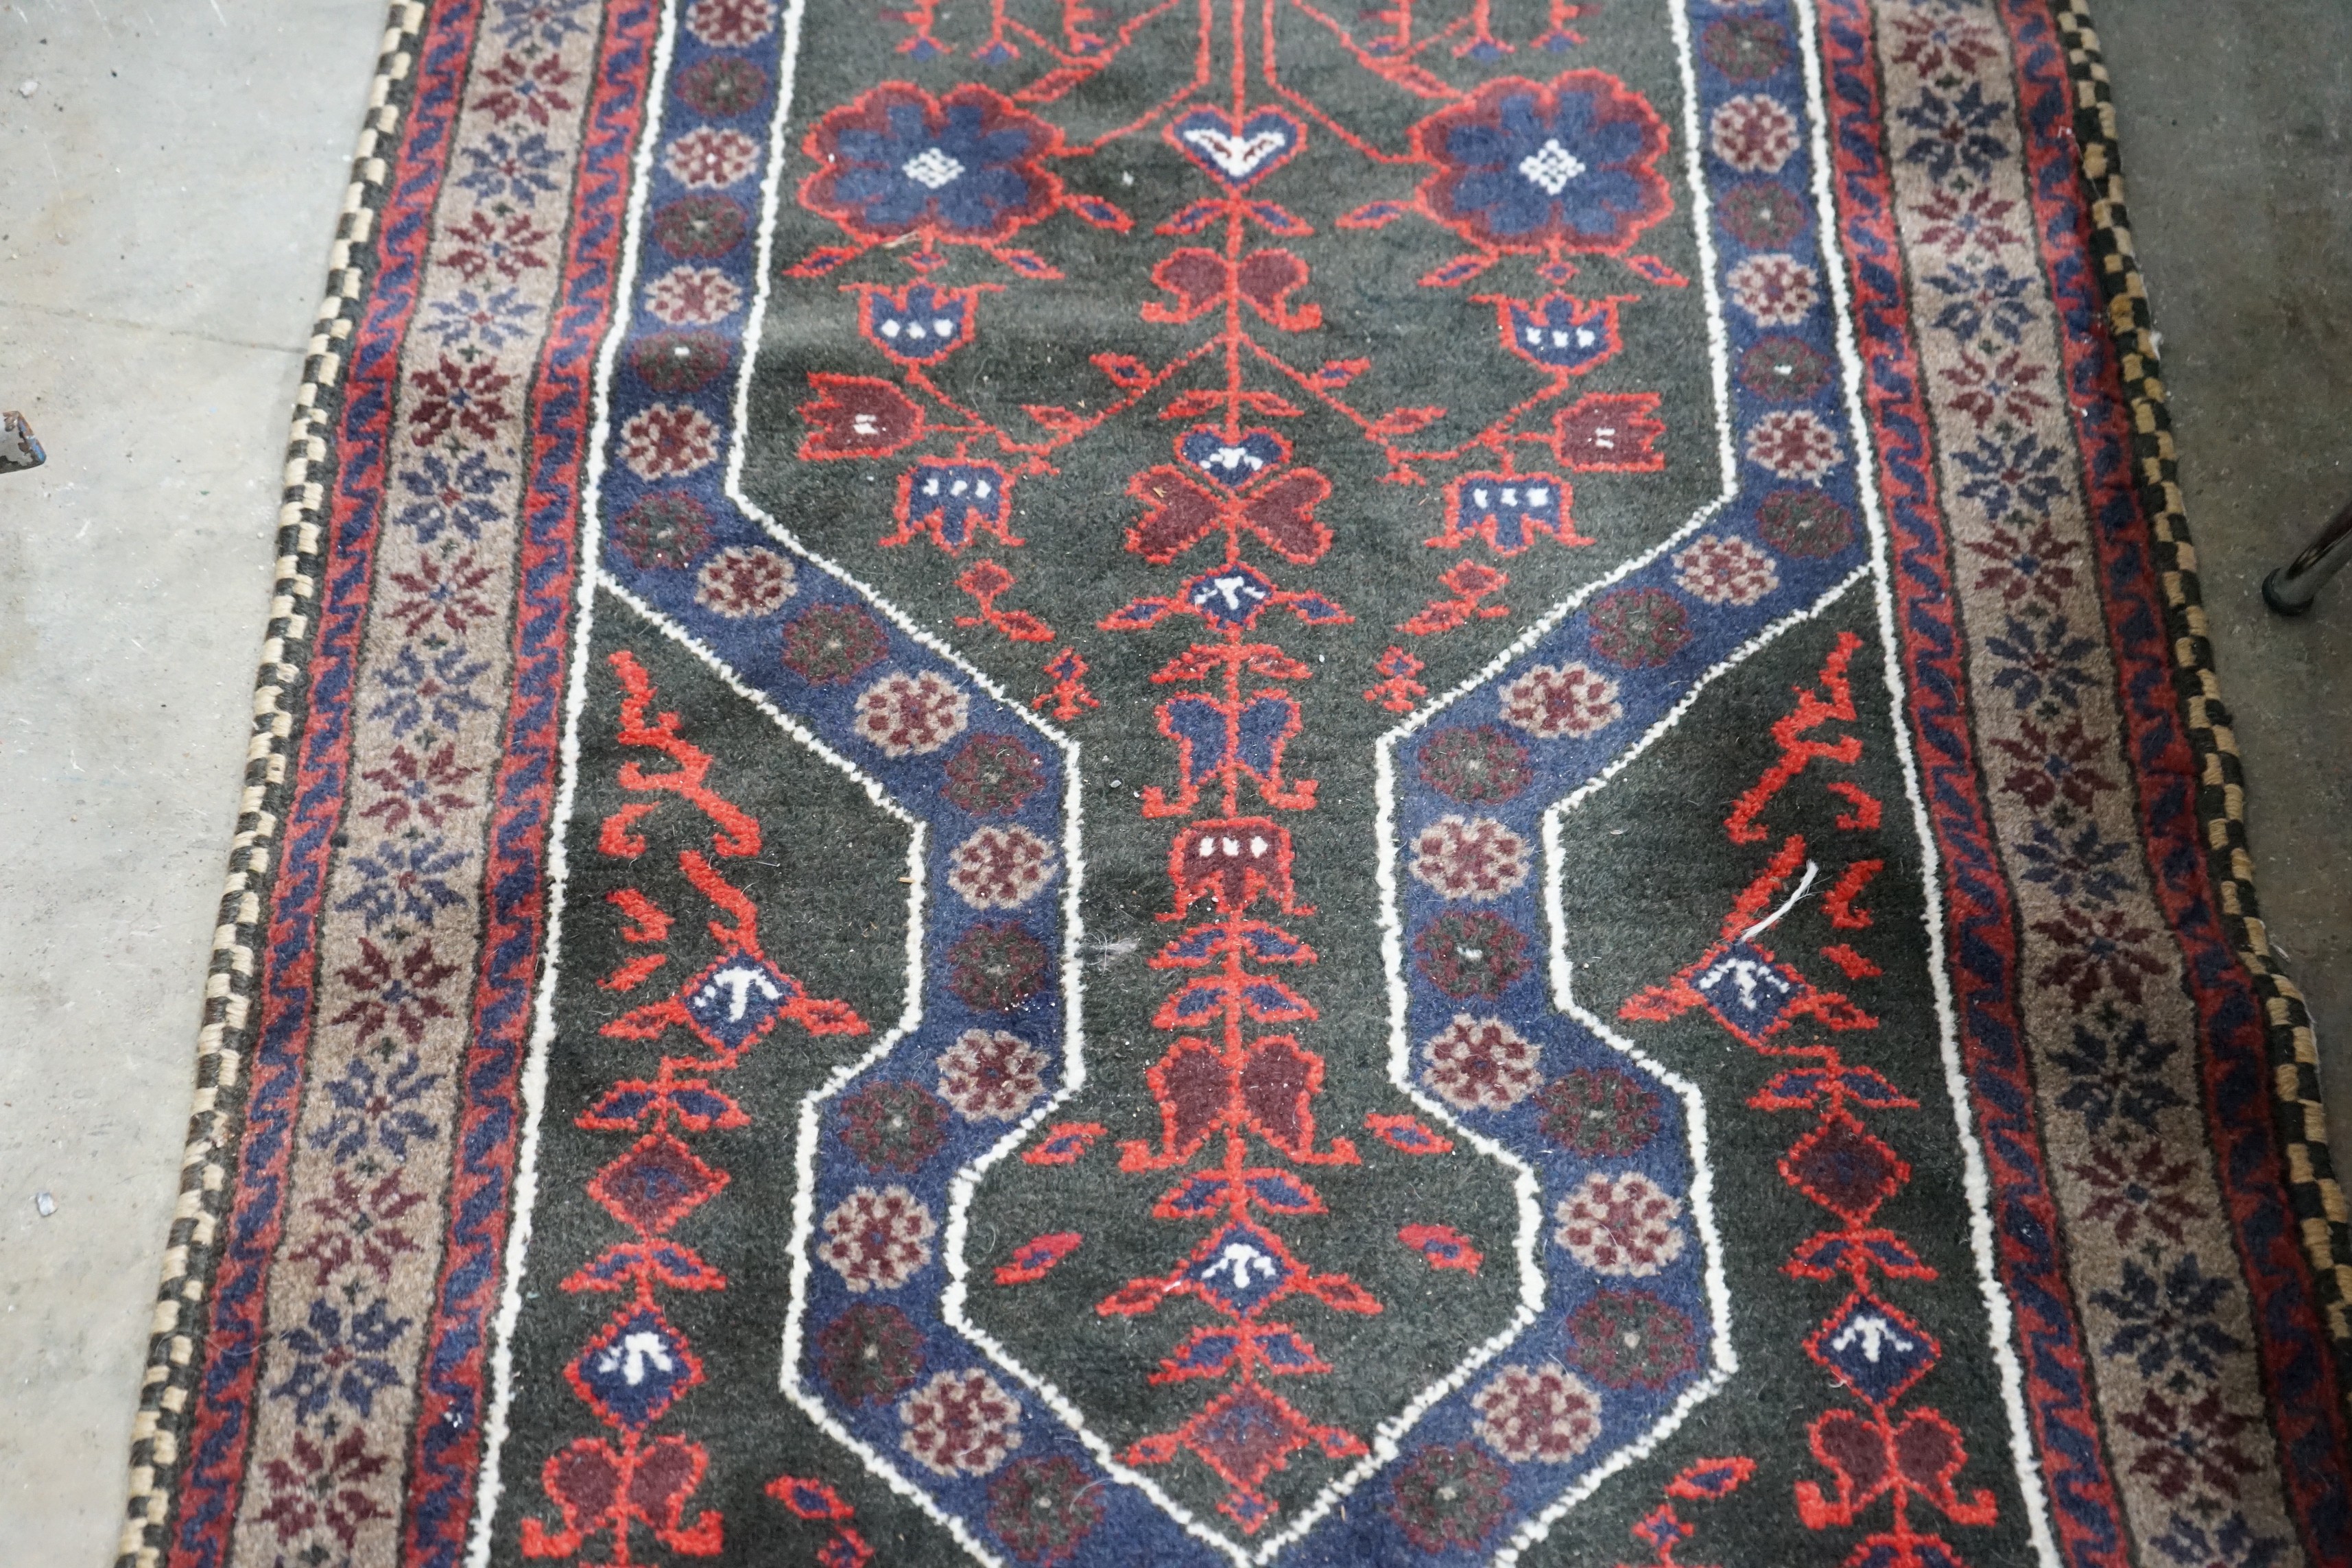 A Belouch blue ground prayer rug, 140 x 74cm